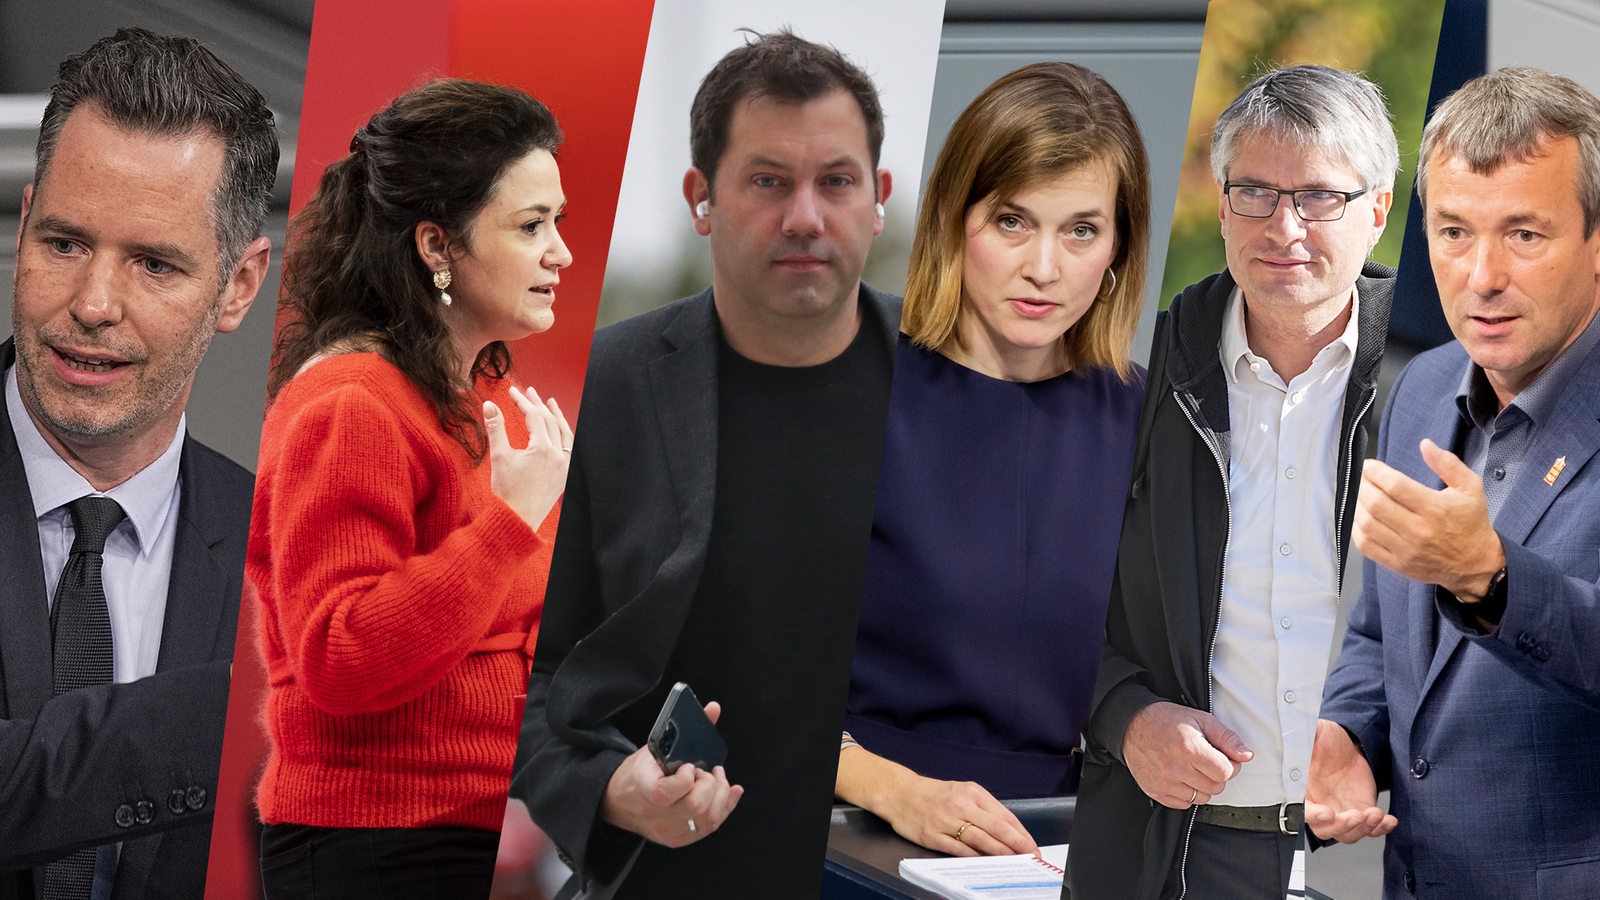 Collage zeigt die 6 Politiker*innen : Christian Dürr,Sarah Ryglewski, Lars Klingbeil, Siemtje Möller, Johann Saathof und Sven Giegold